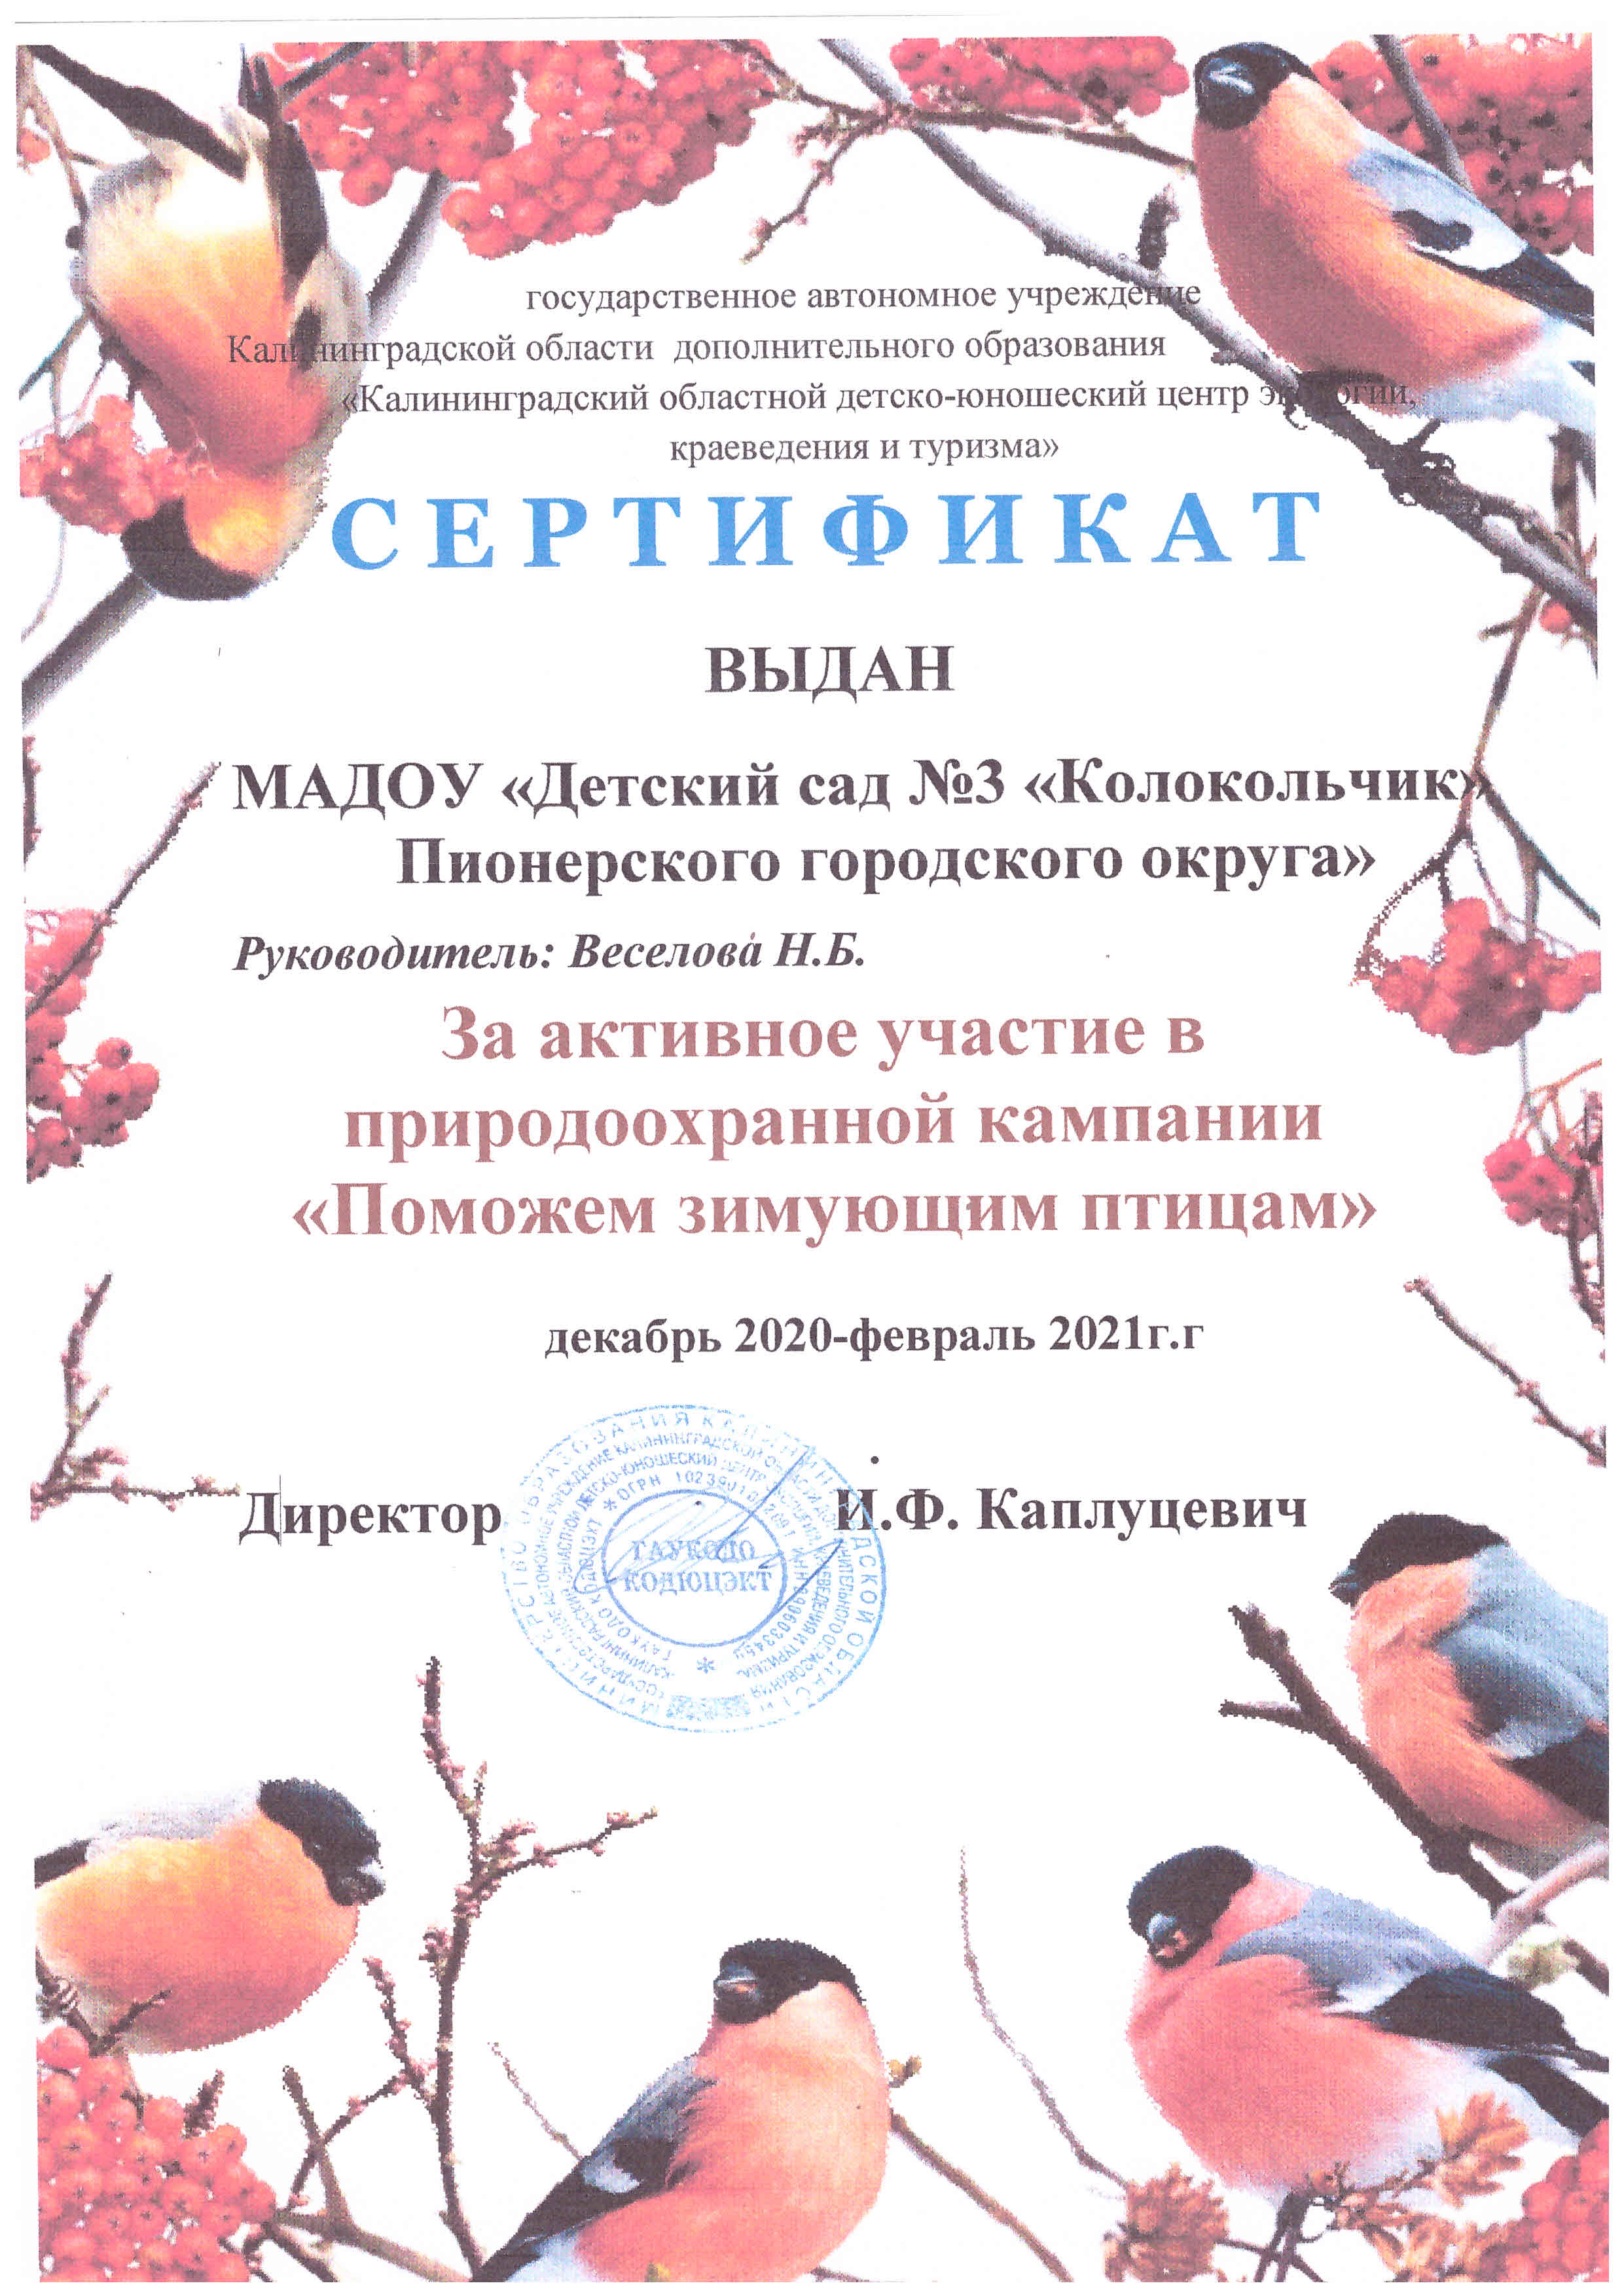 Сертификат Птицы 2021